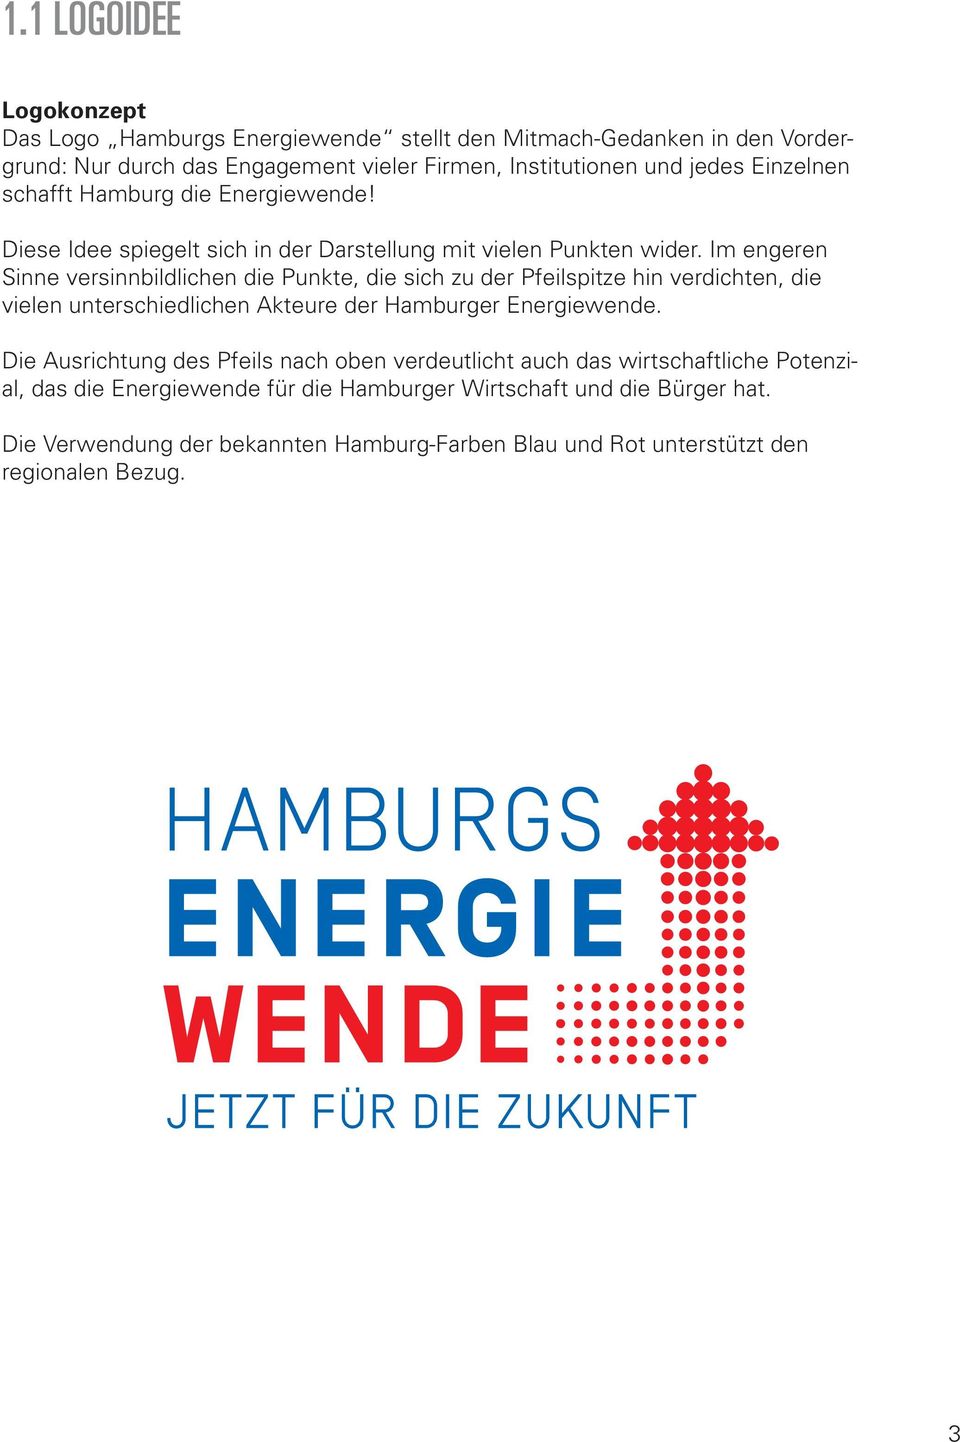 Im engeren Sinne versinnbildlichen die Punkte, die sich zu der Pfeilspitze hin verdichten, die vielen unterschiedlichen Akteure der Hamburger Energiewende.